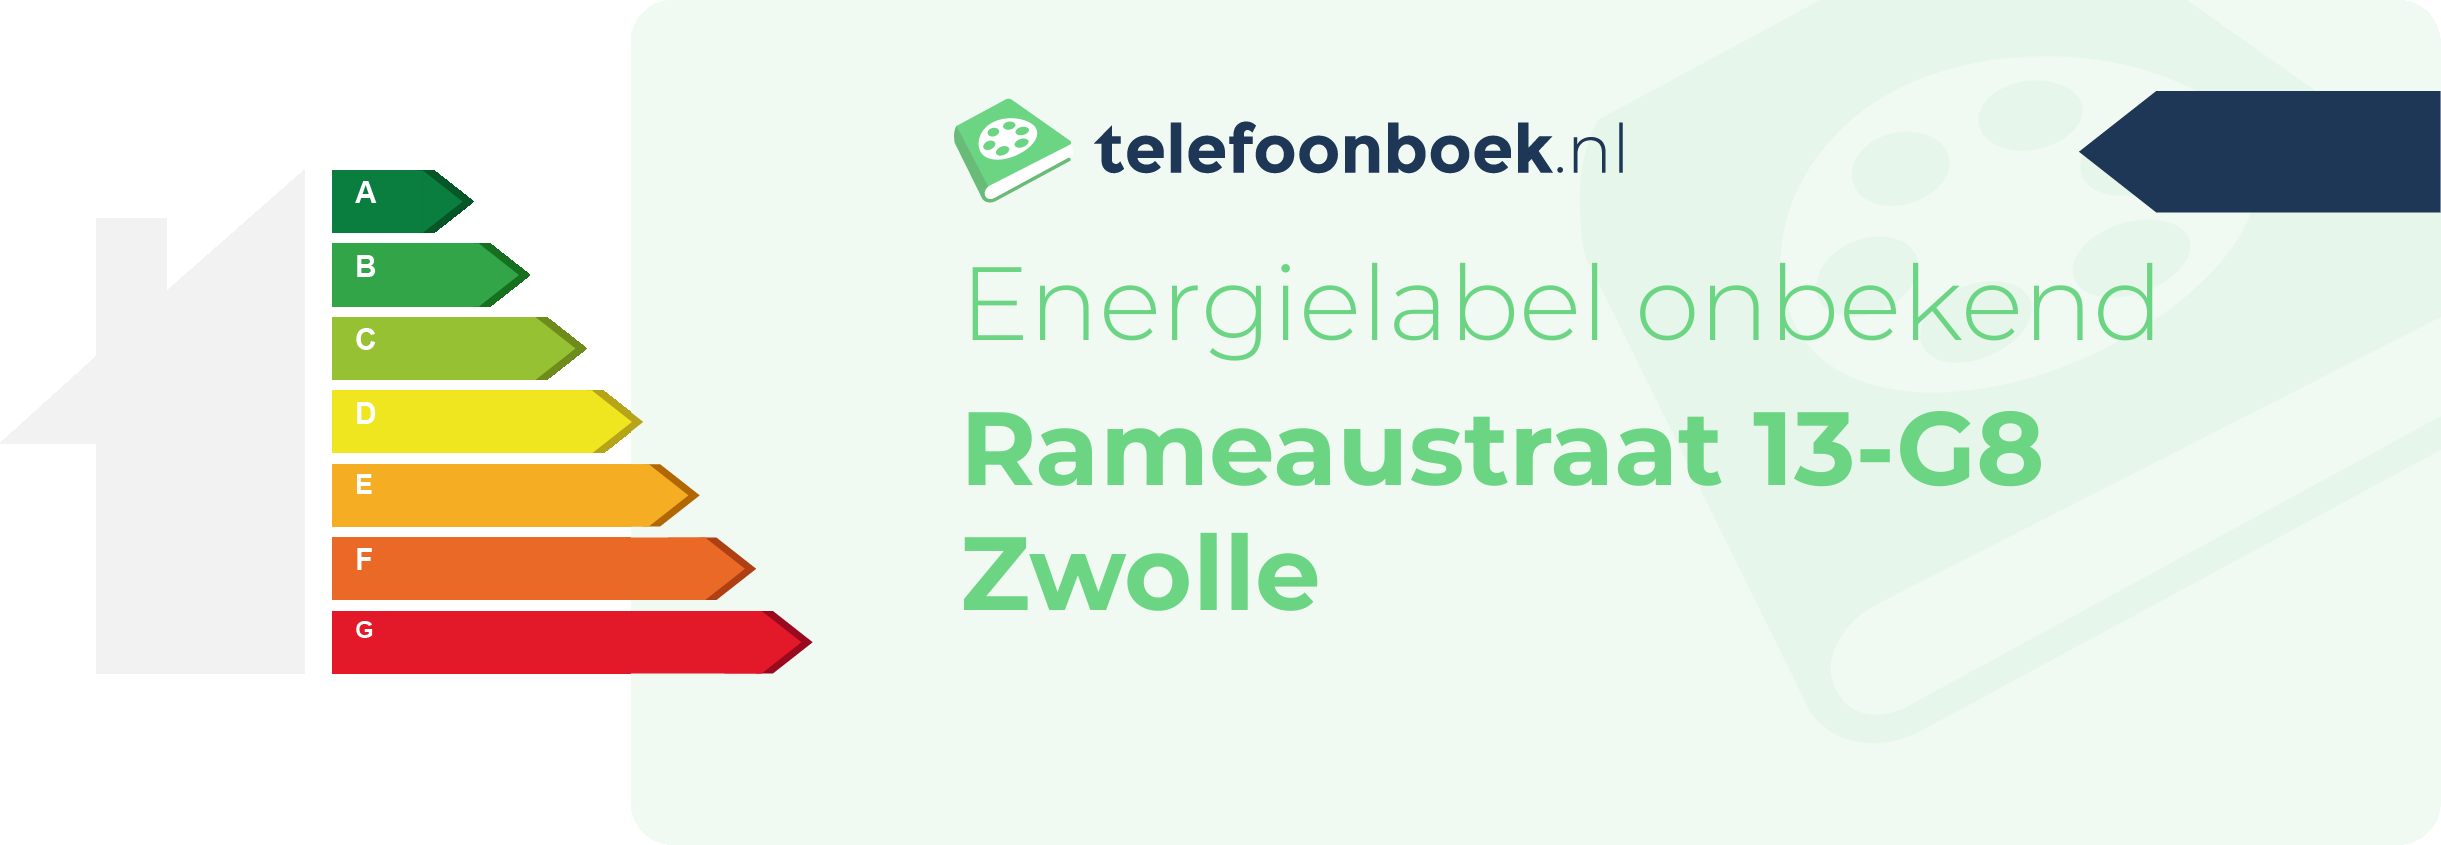 Energielabel Rameaustraat 13-G8 Zwolle